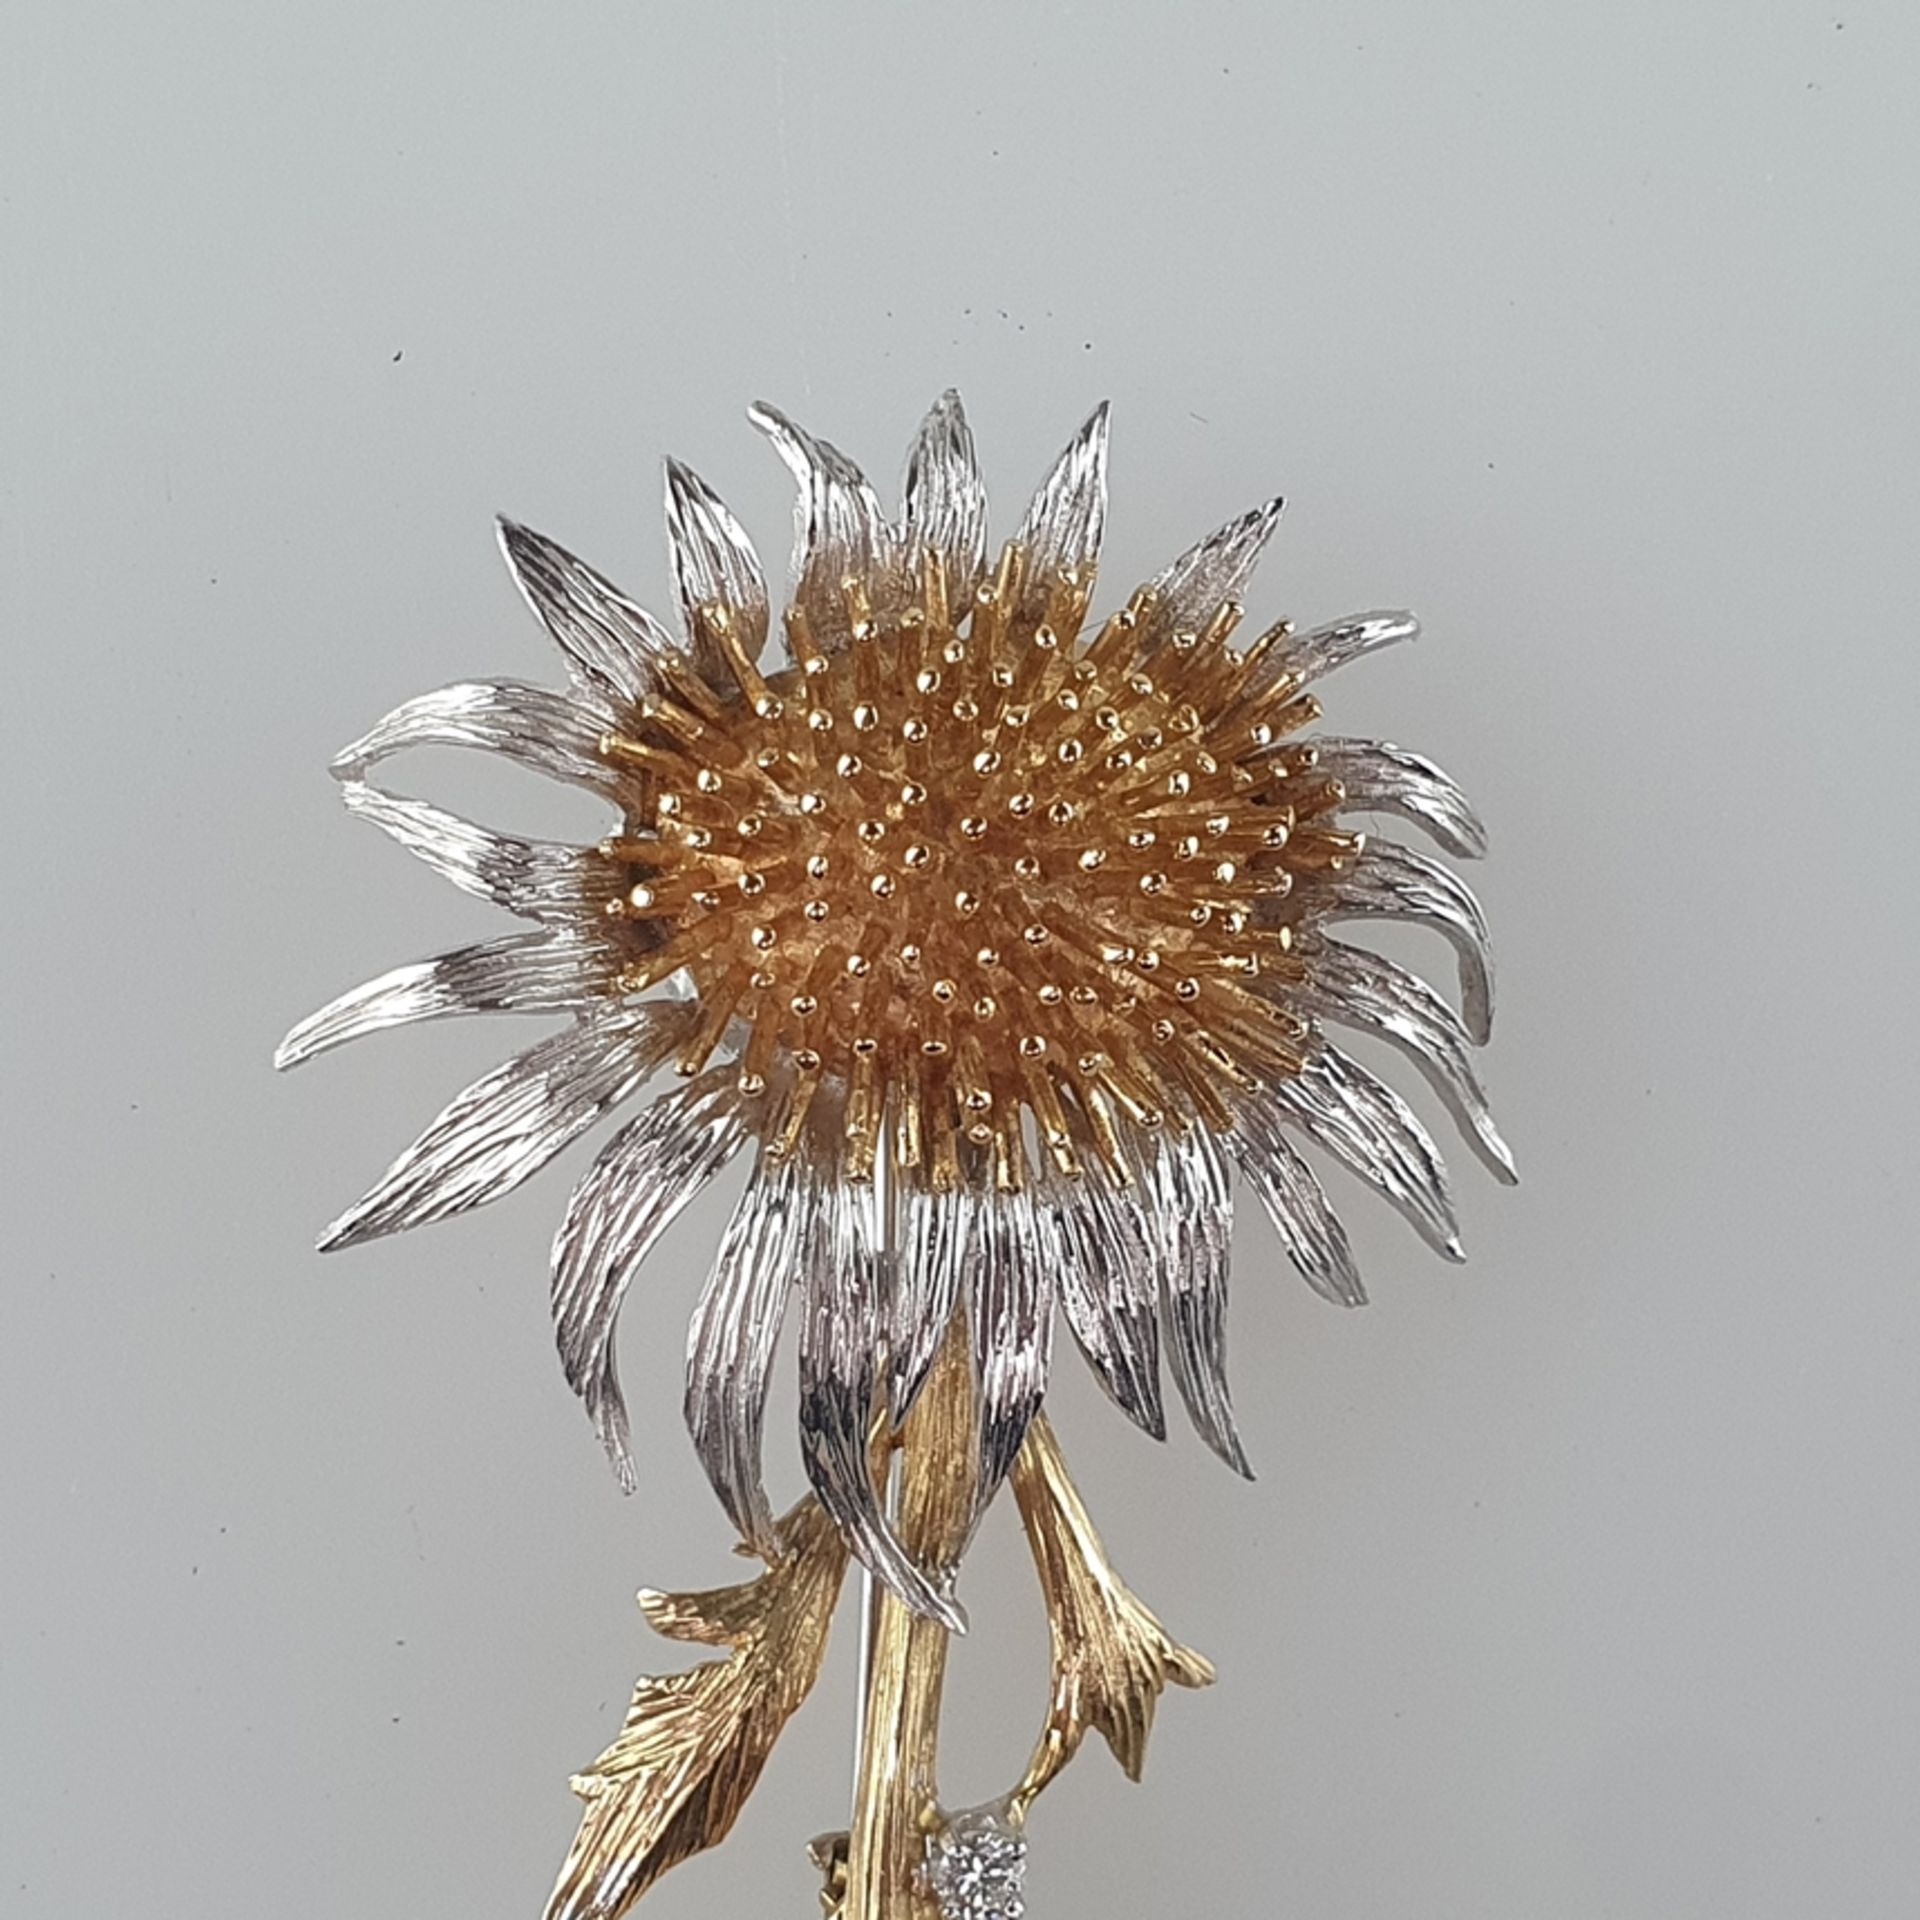 Florale Brosche - Gelb-/Weißgold 585/000 (14 K), gepunzt, als Silberdistelblüte gearbeitet, fein zi - Bild 2 aus 6